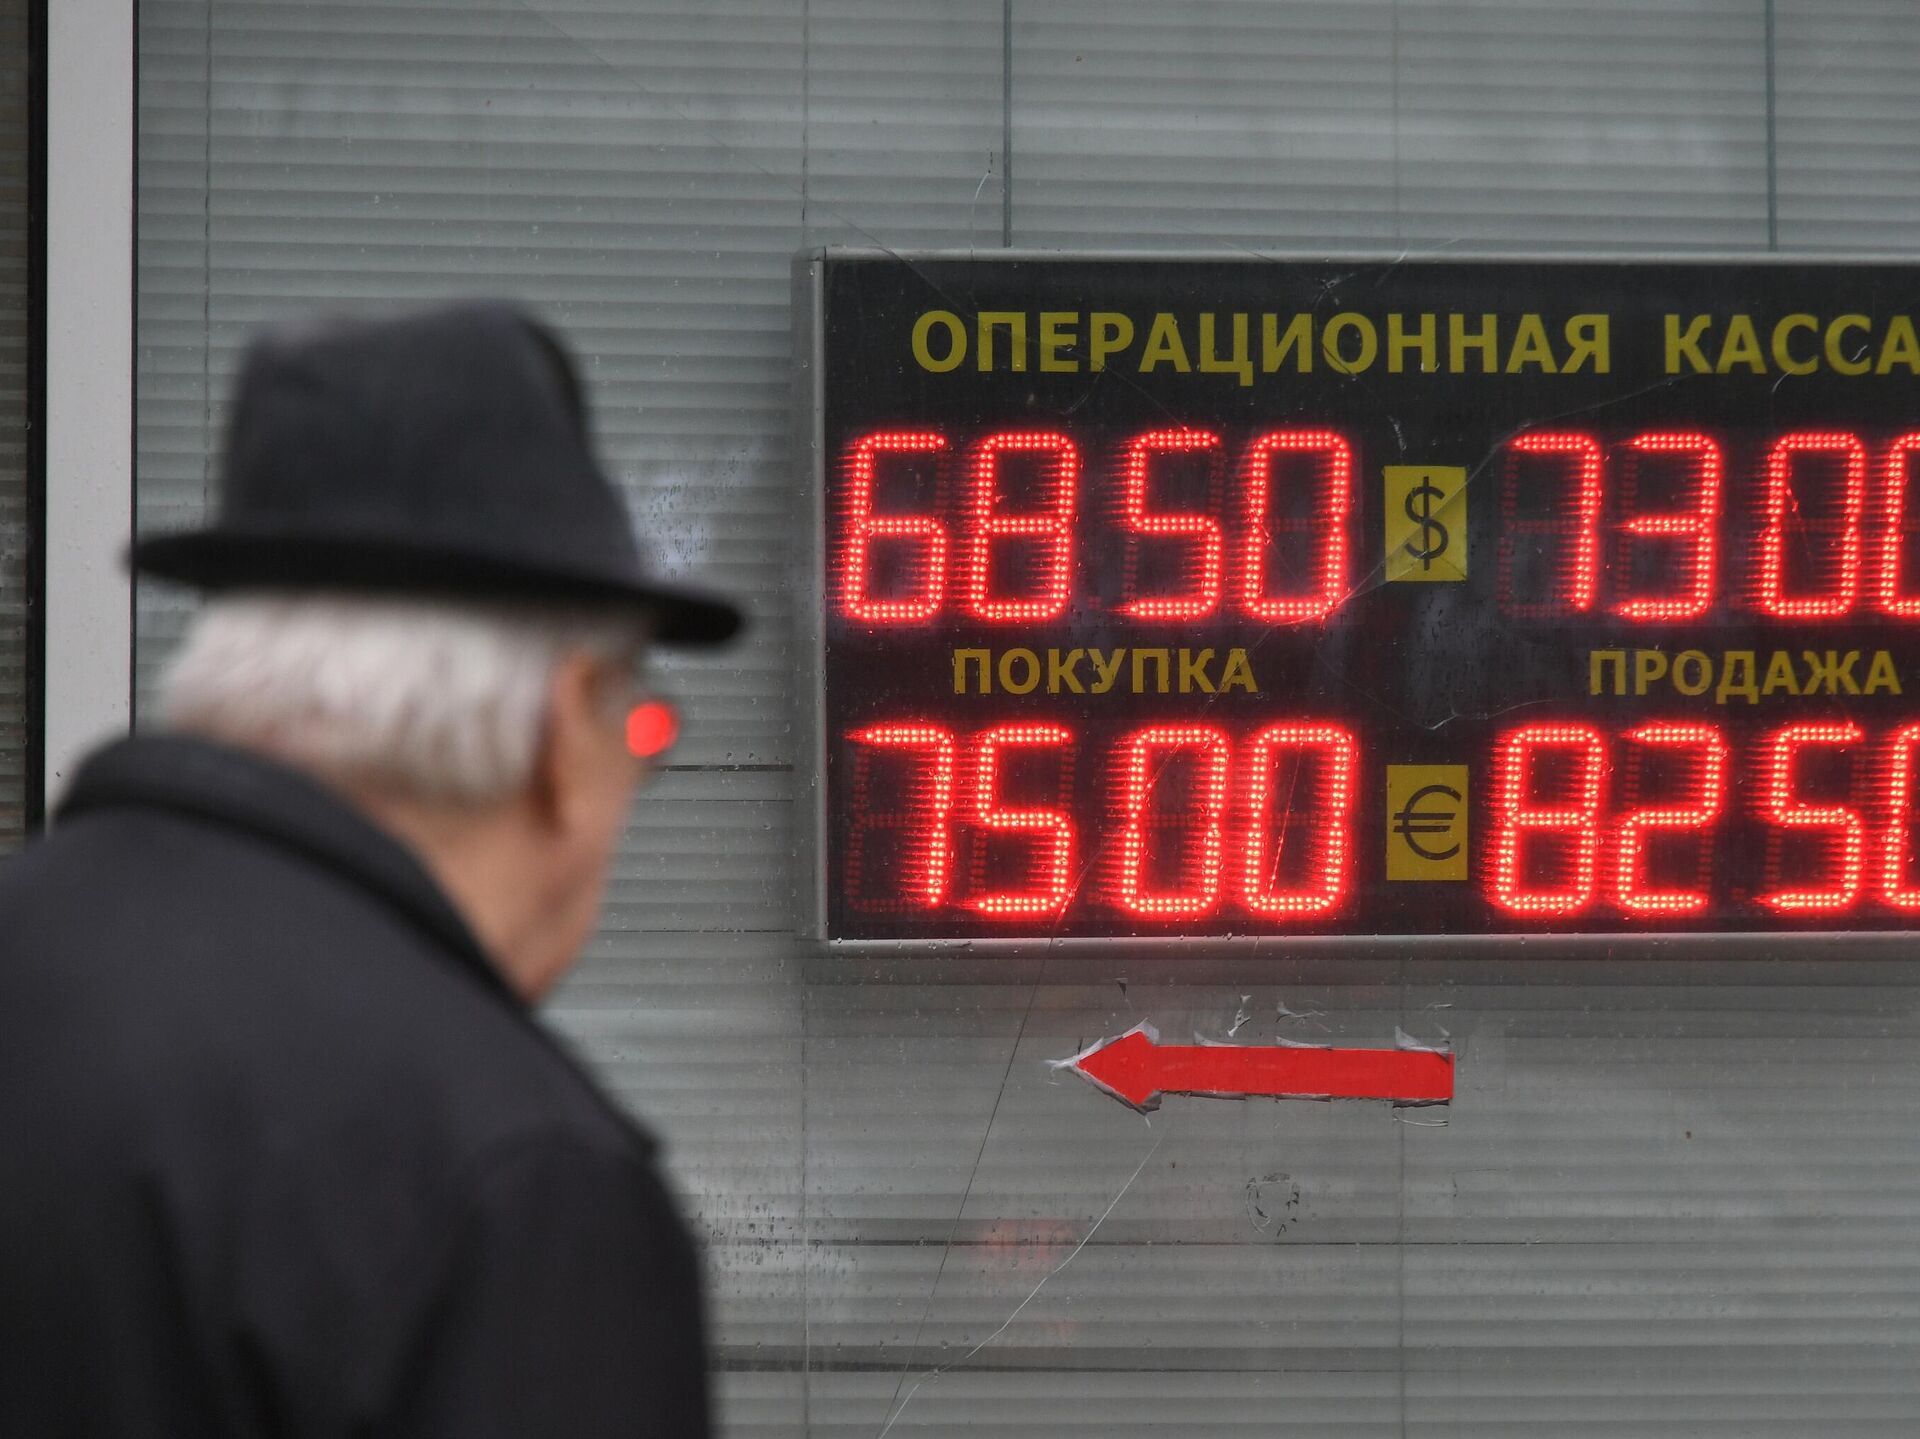 Обмен валюты в москве по воскресеньям лучший пул bitcoin